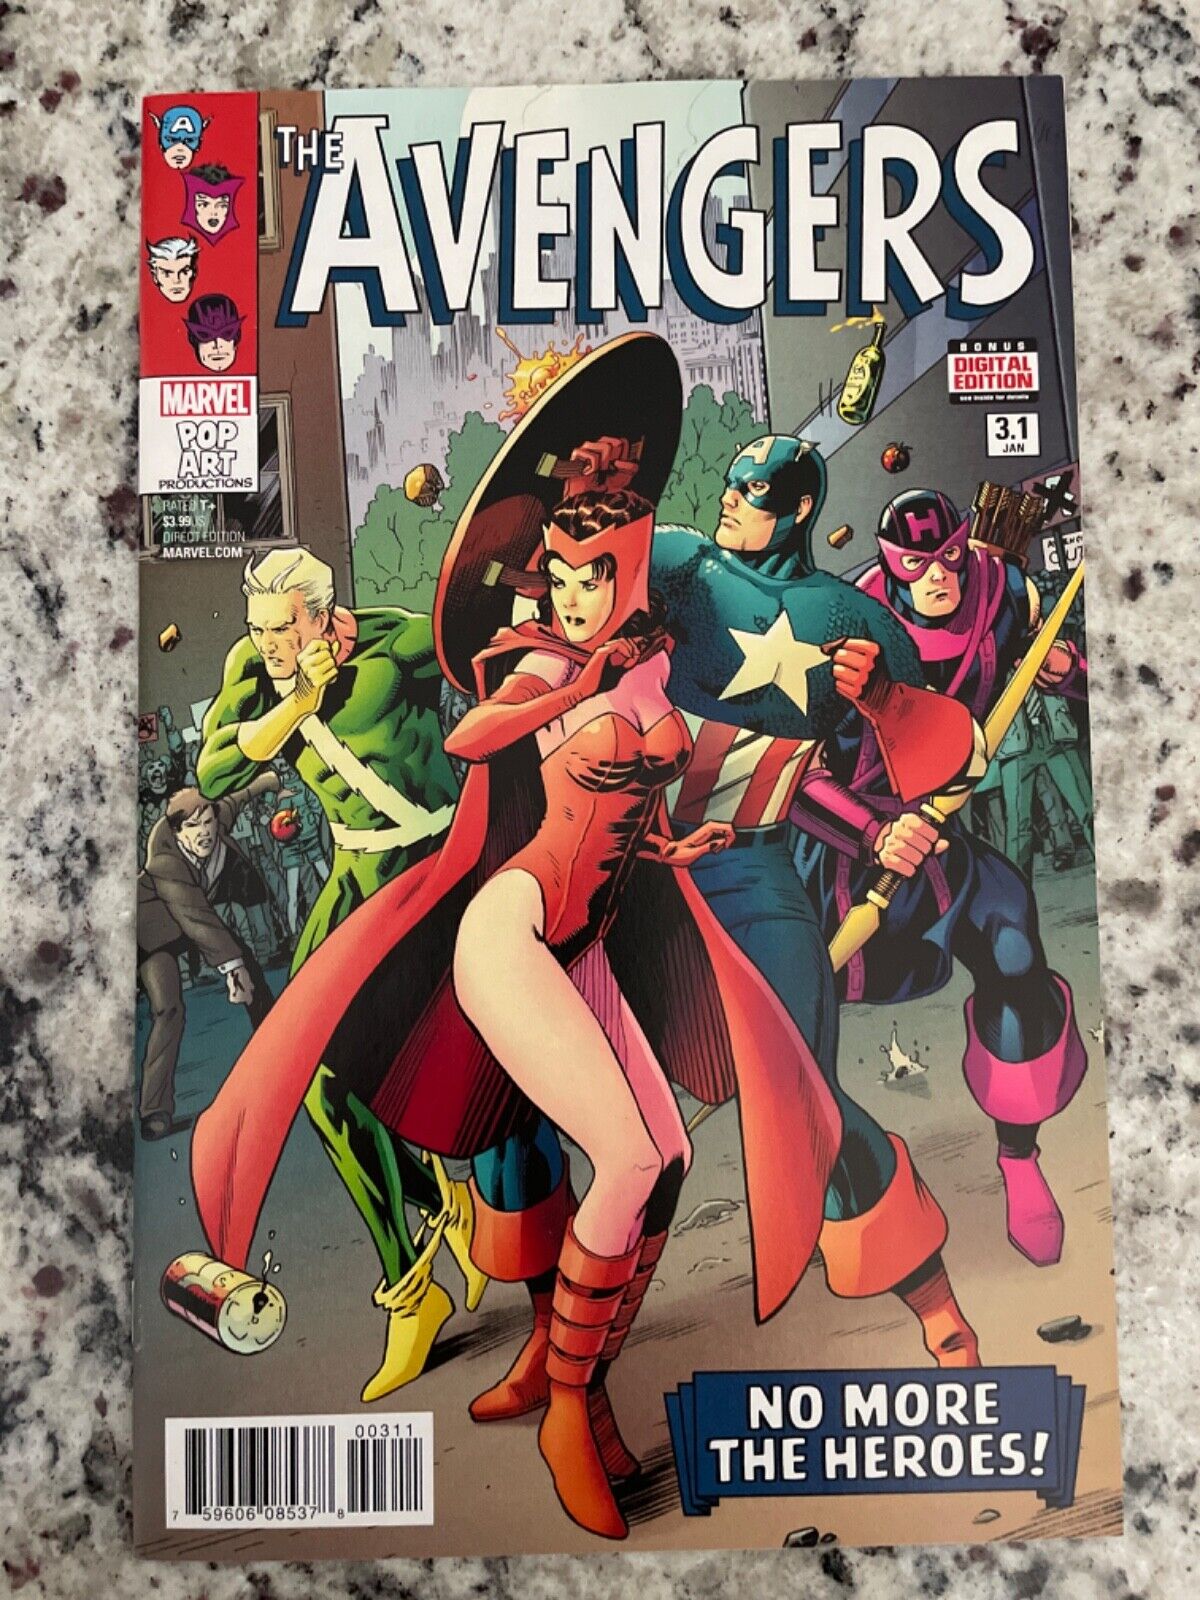 Avengers #3.1 Vol 6 (Marvel, 2017) NM-